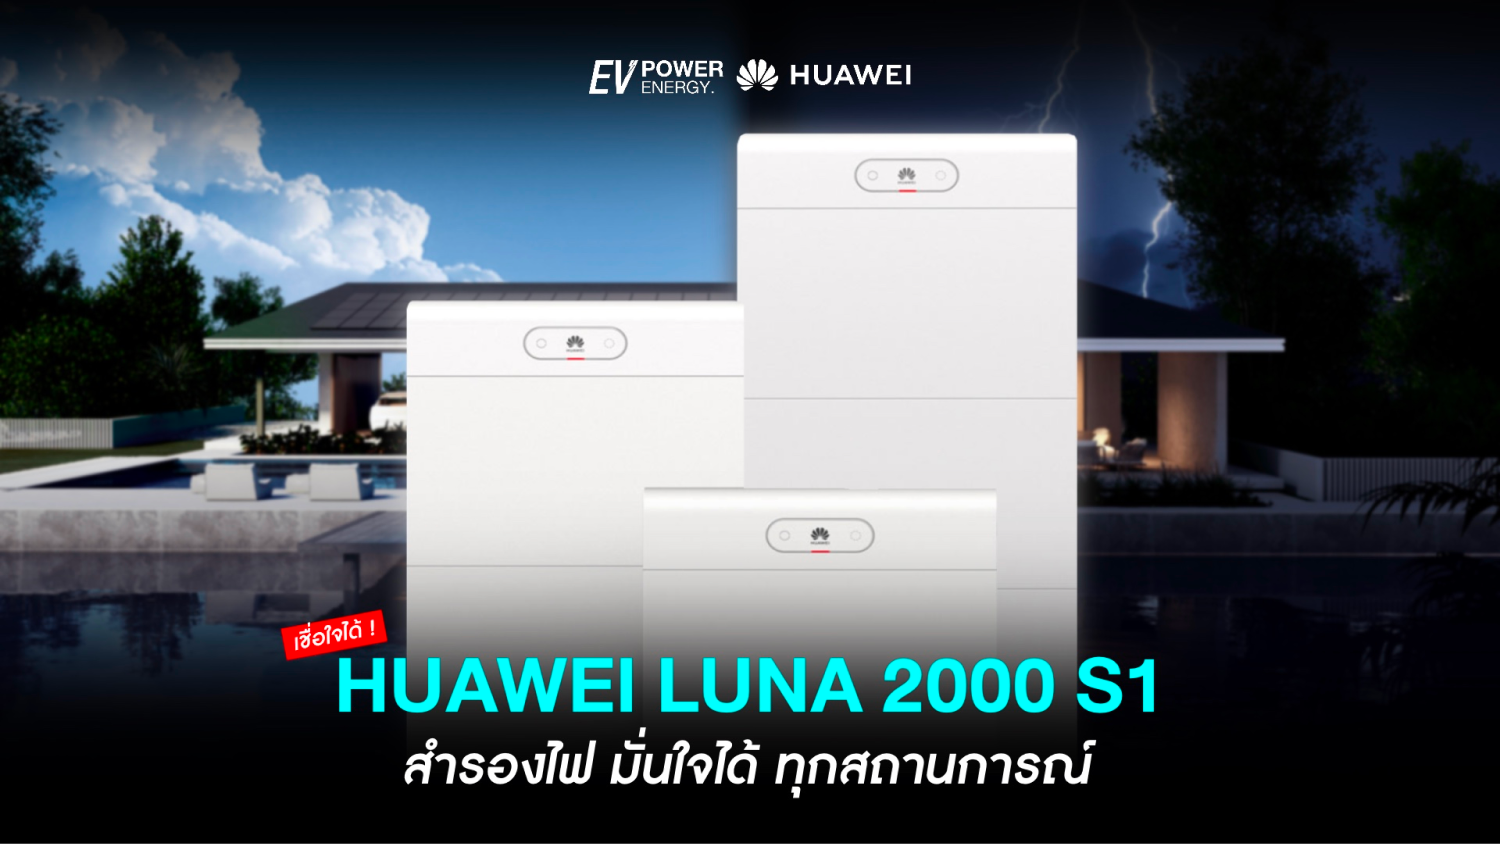 Huawei LUNA 2000 S1 มั่นใจได้ ทุกสถานการณ์